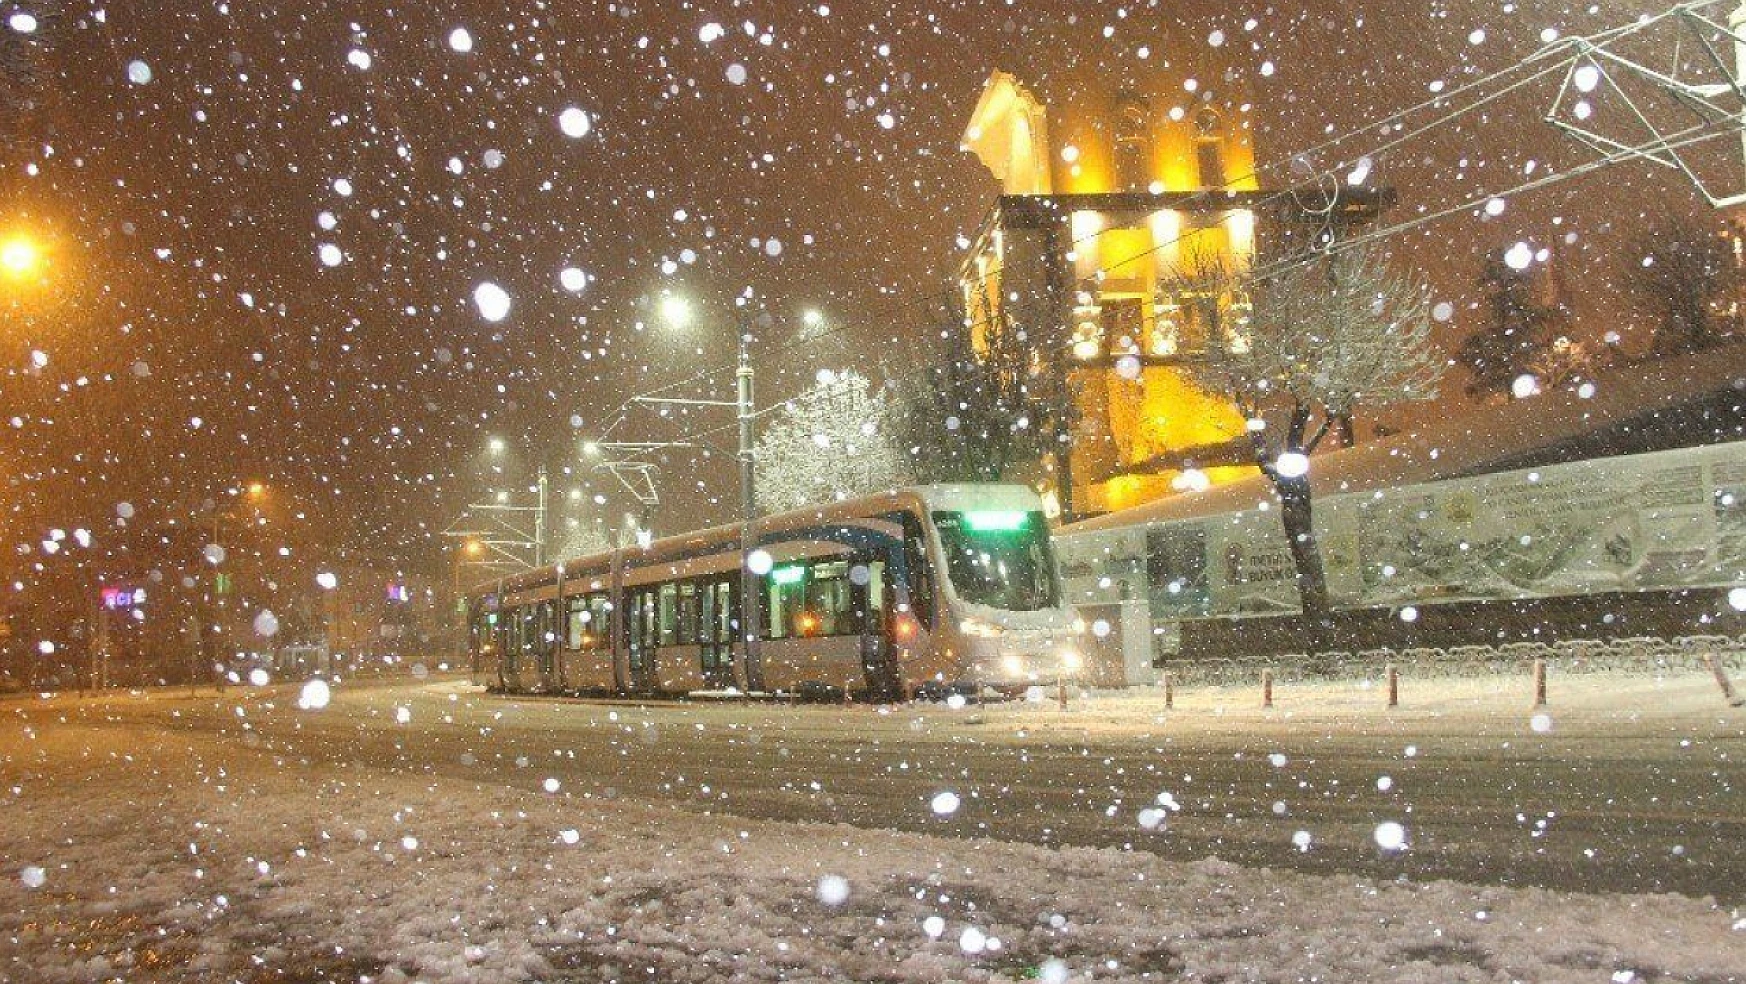 Meteoroloji'den Konya'ya kar müjdesi: Tarih belli oldu o gün Konya'da kar var!